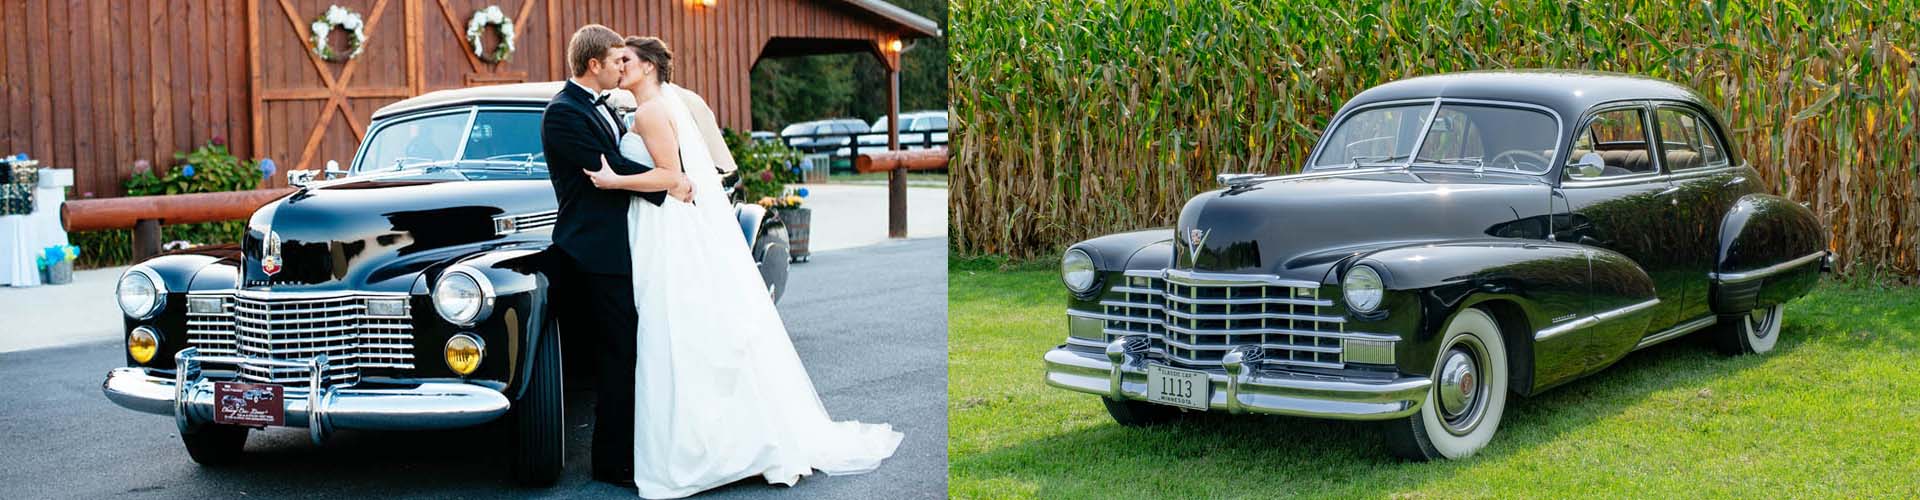 Classic Car Wedding Transportation